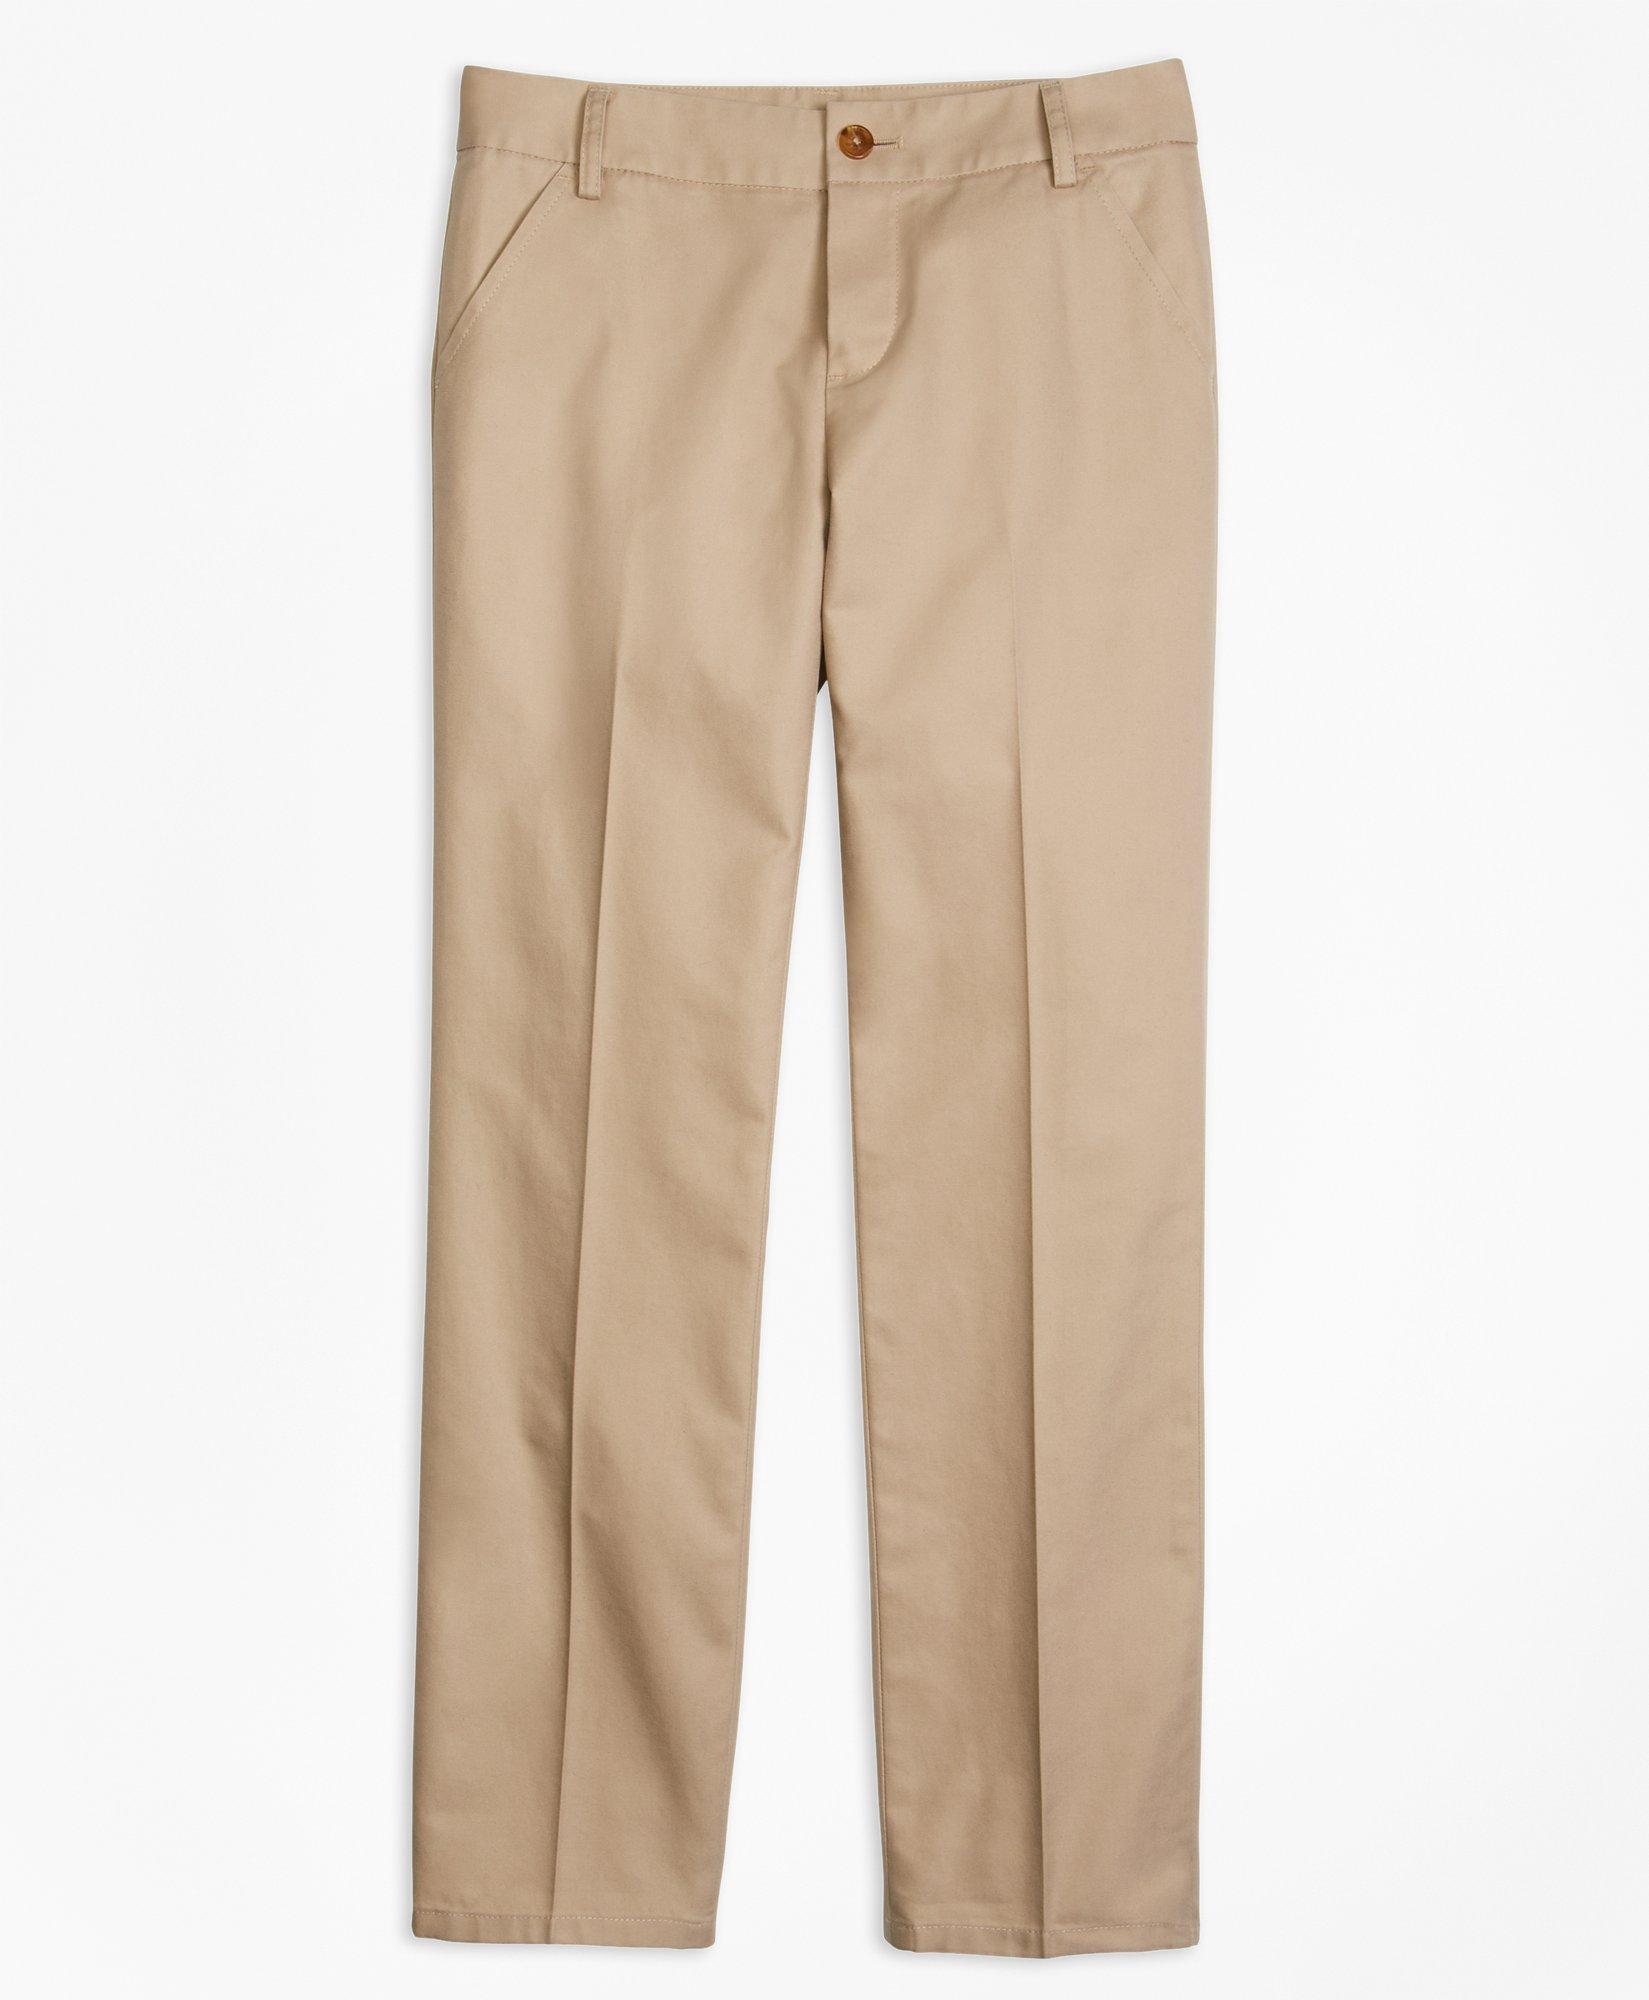 Brooks Brothers Kids'  Girls Non-iron Chino Pants | Khaki | Size 4